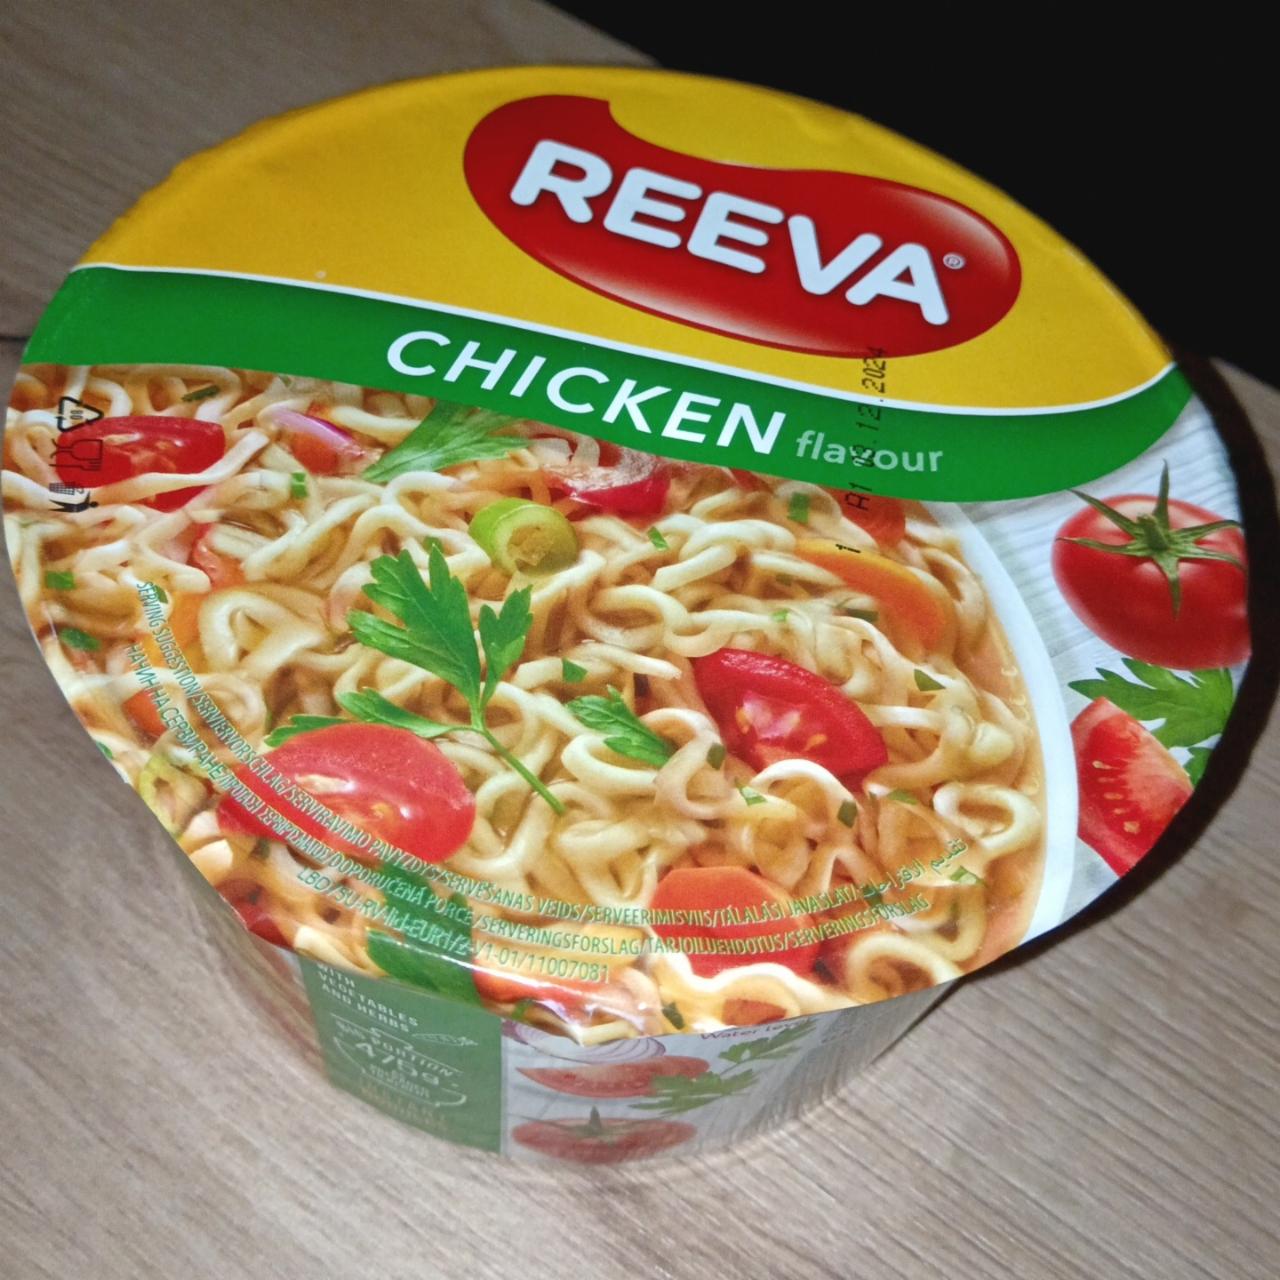 Fotografie - Chicken flavour Reeva